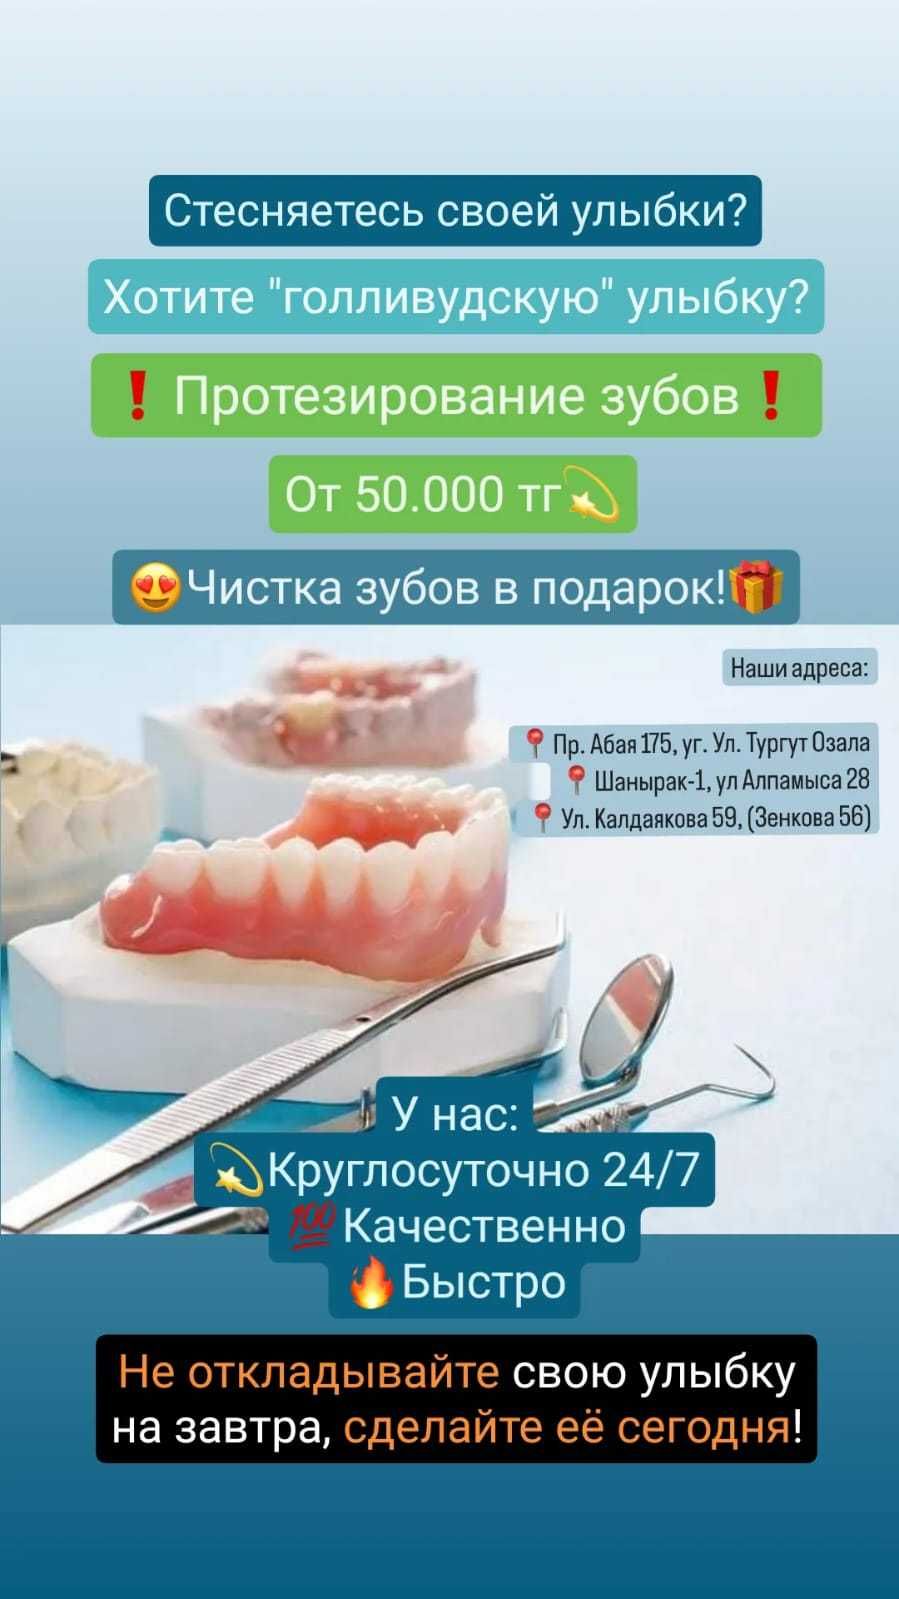 Имплантация зубов не дорого в Алматы